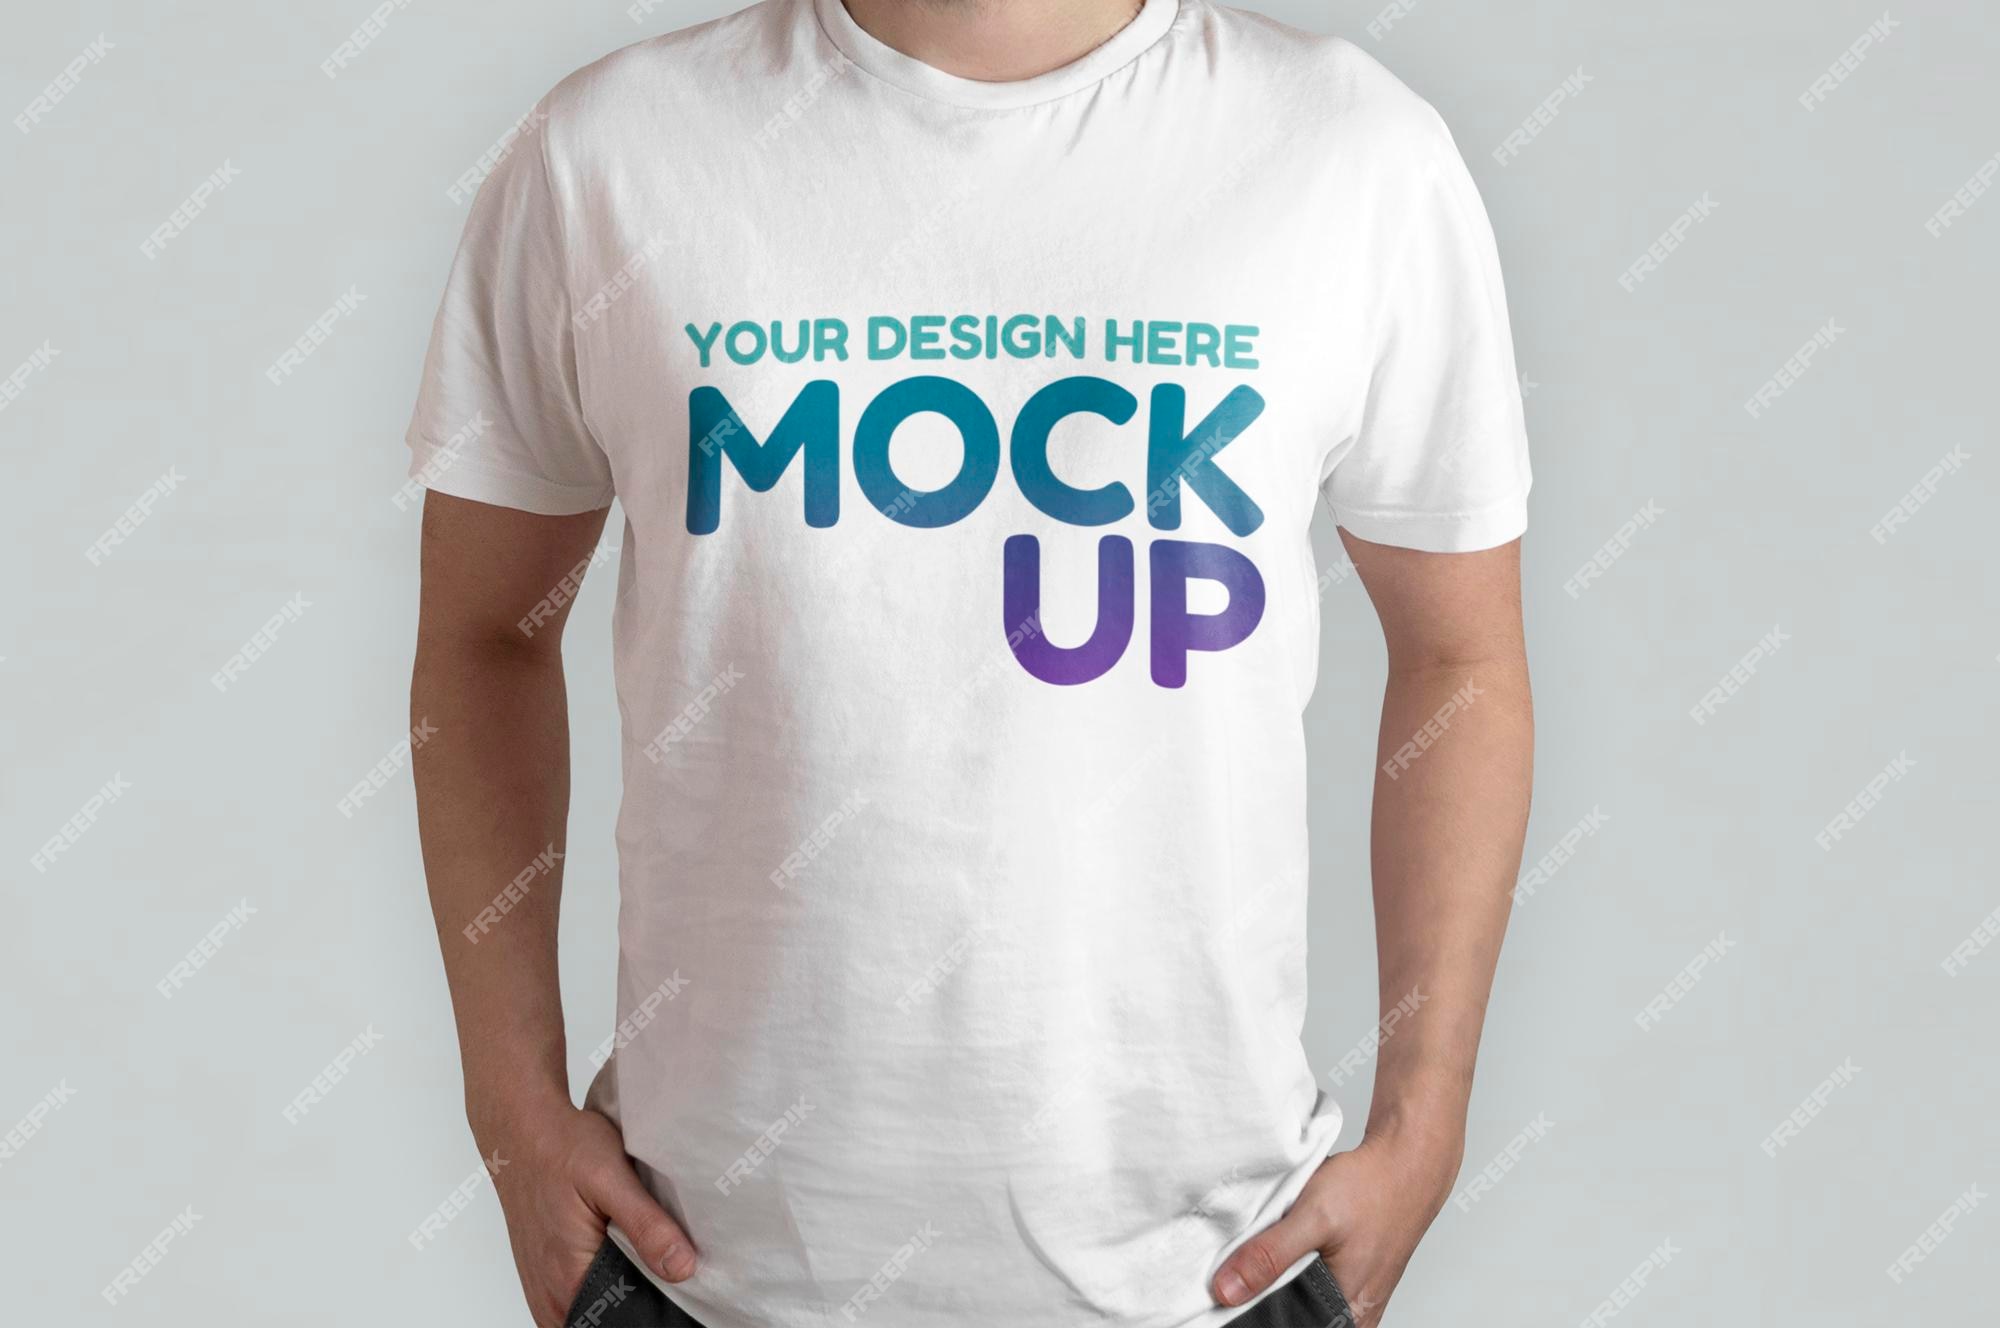 T Shirt Mockup - Free & PSDs to Download